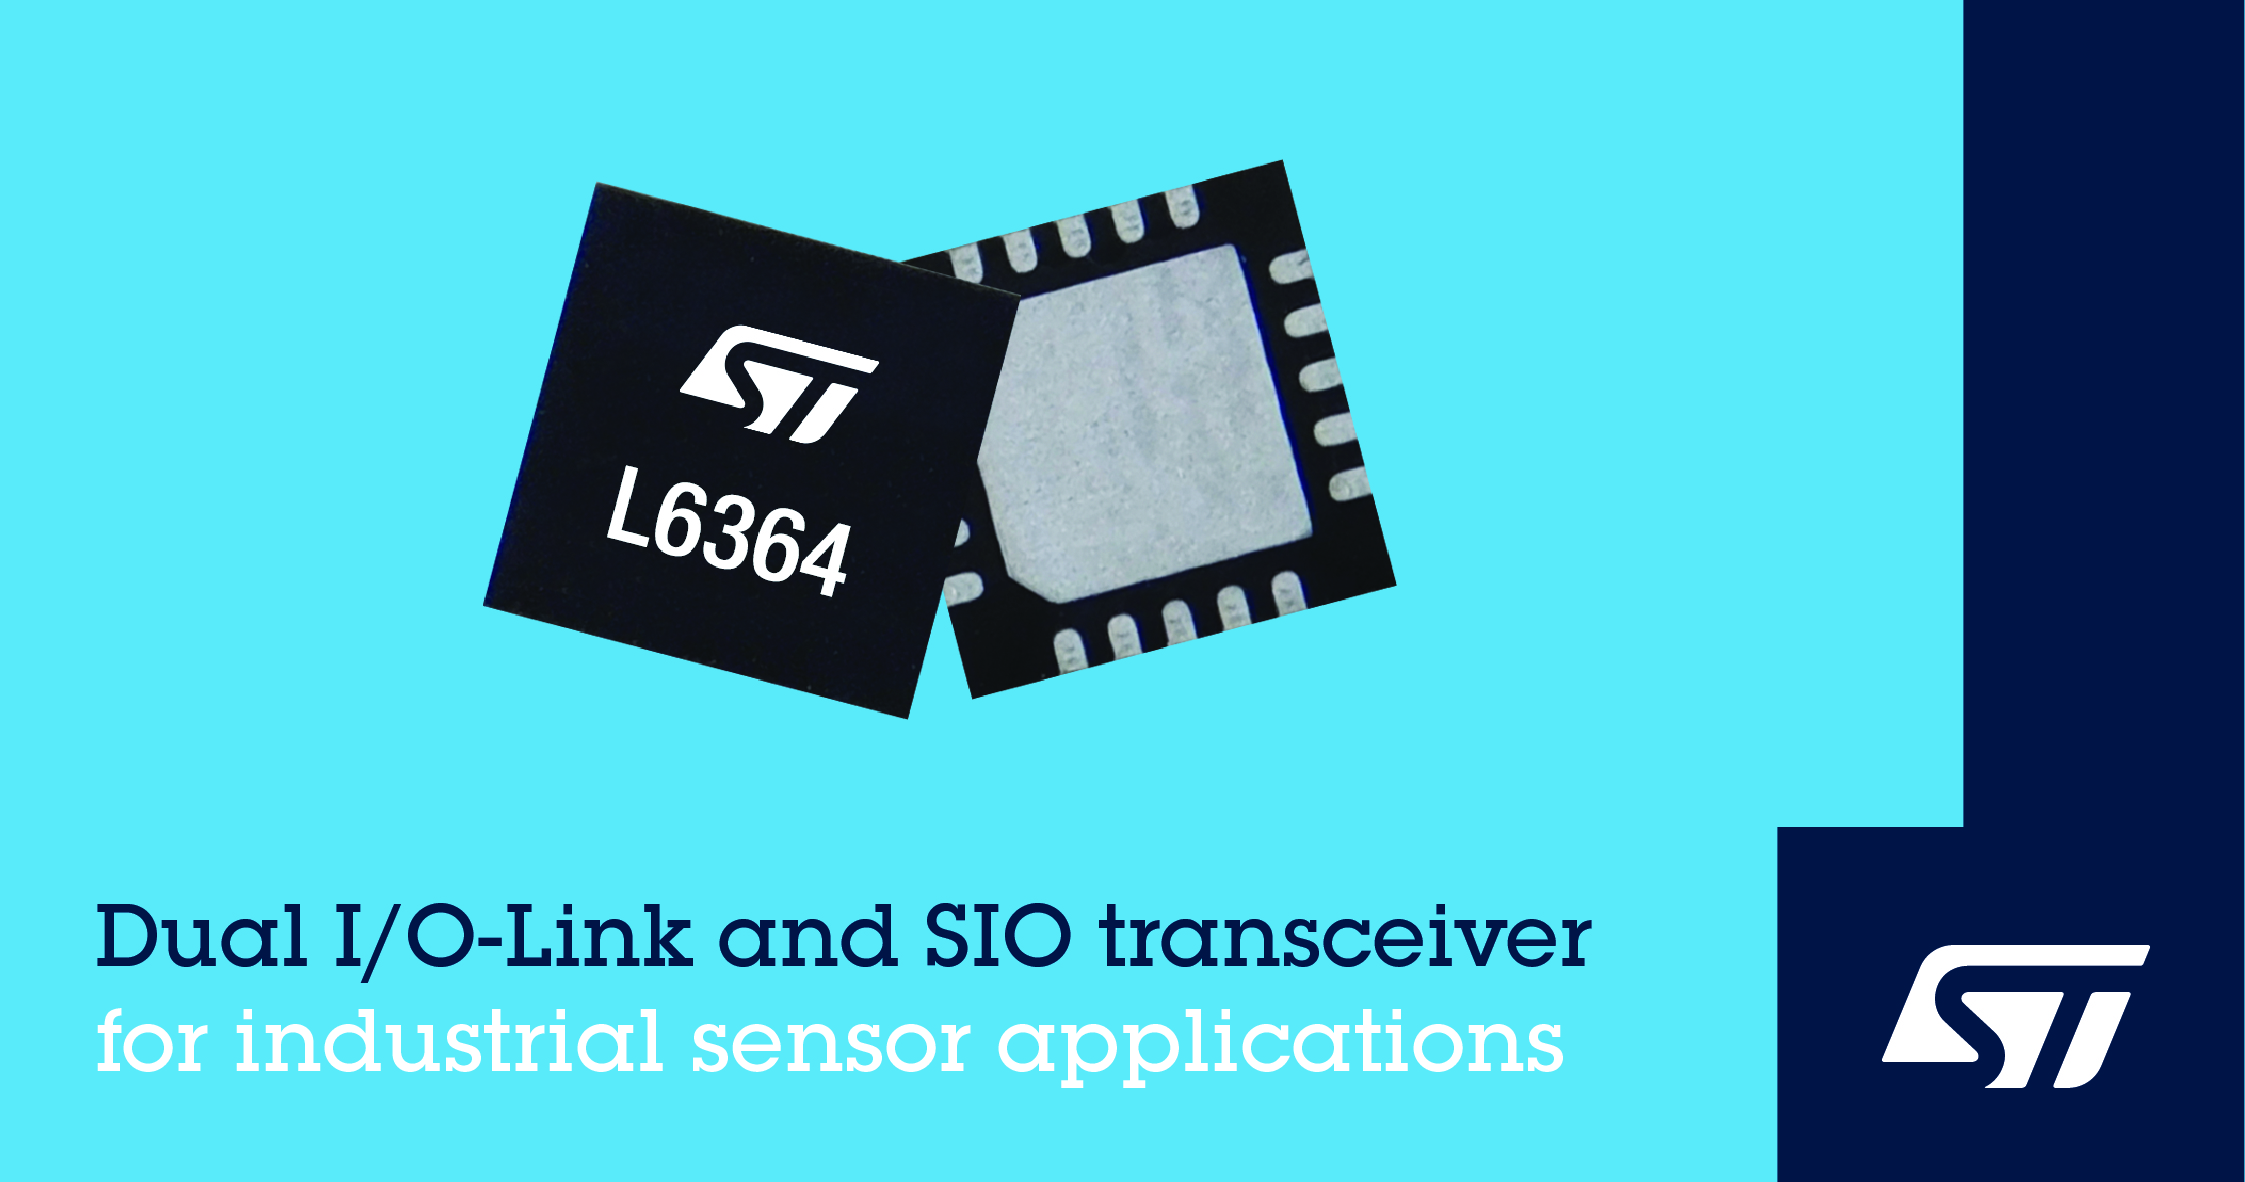 意法半导体推出灵活可配置双通道I/O-Link和SIO双模收发器 简化传感器连接